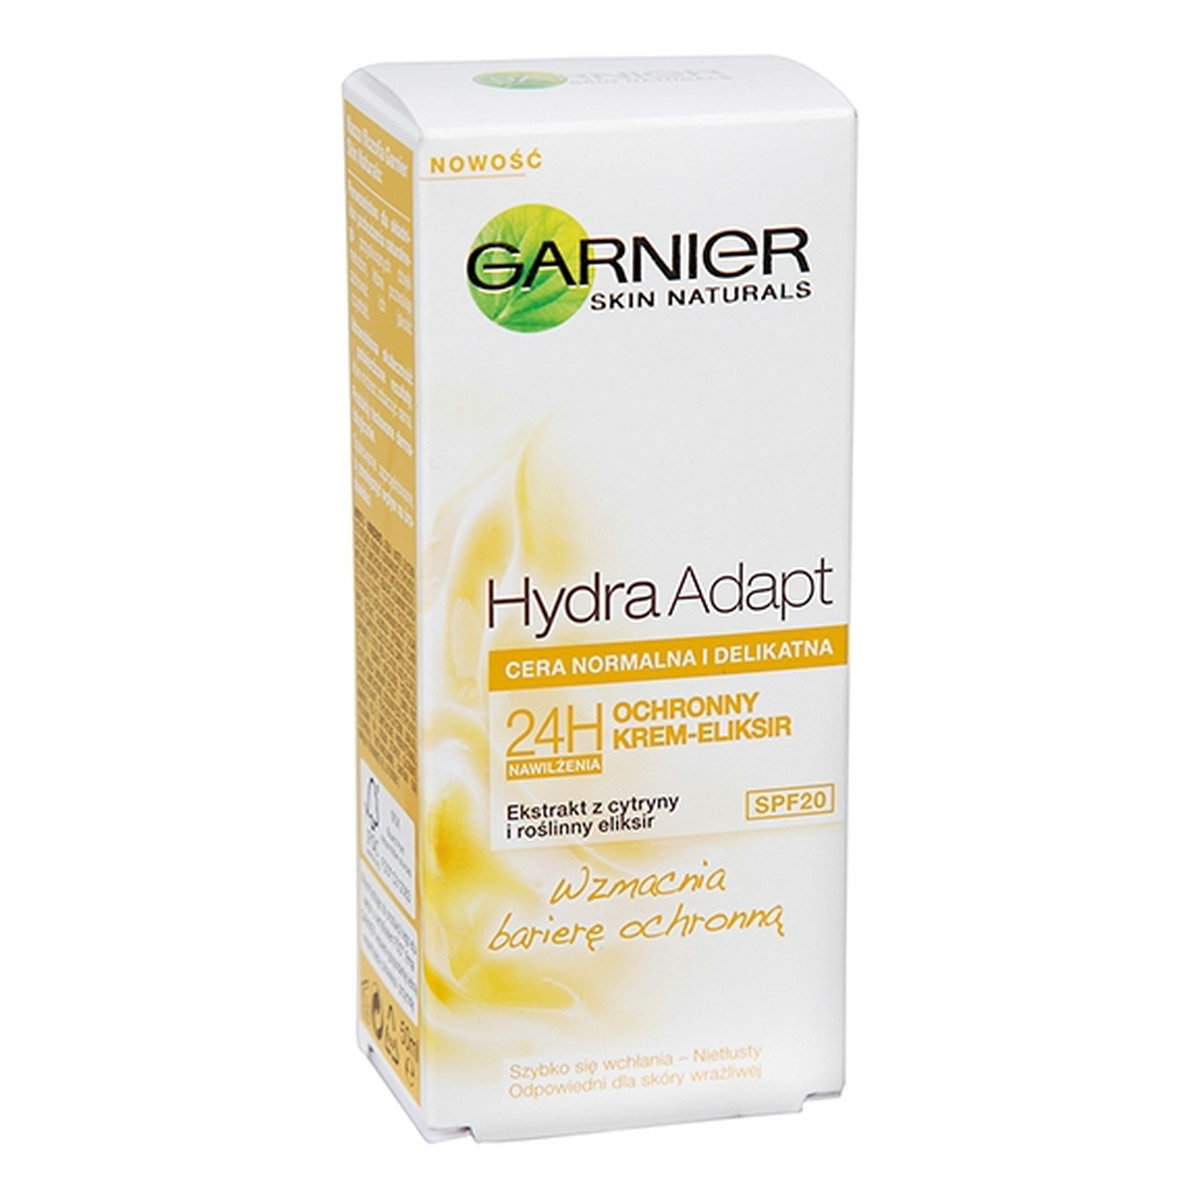 Garnier Hydra Adapt Skin Naturals Ochronny Krem Do Twarzy 50ml